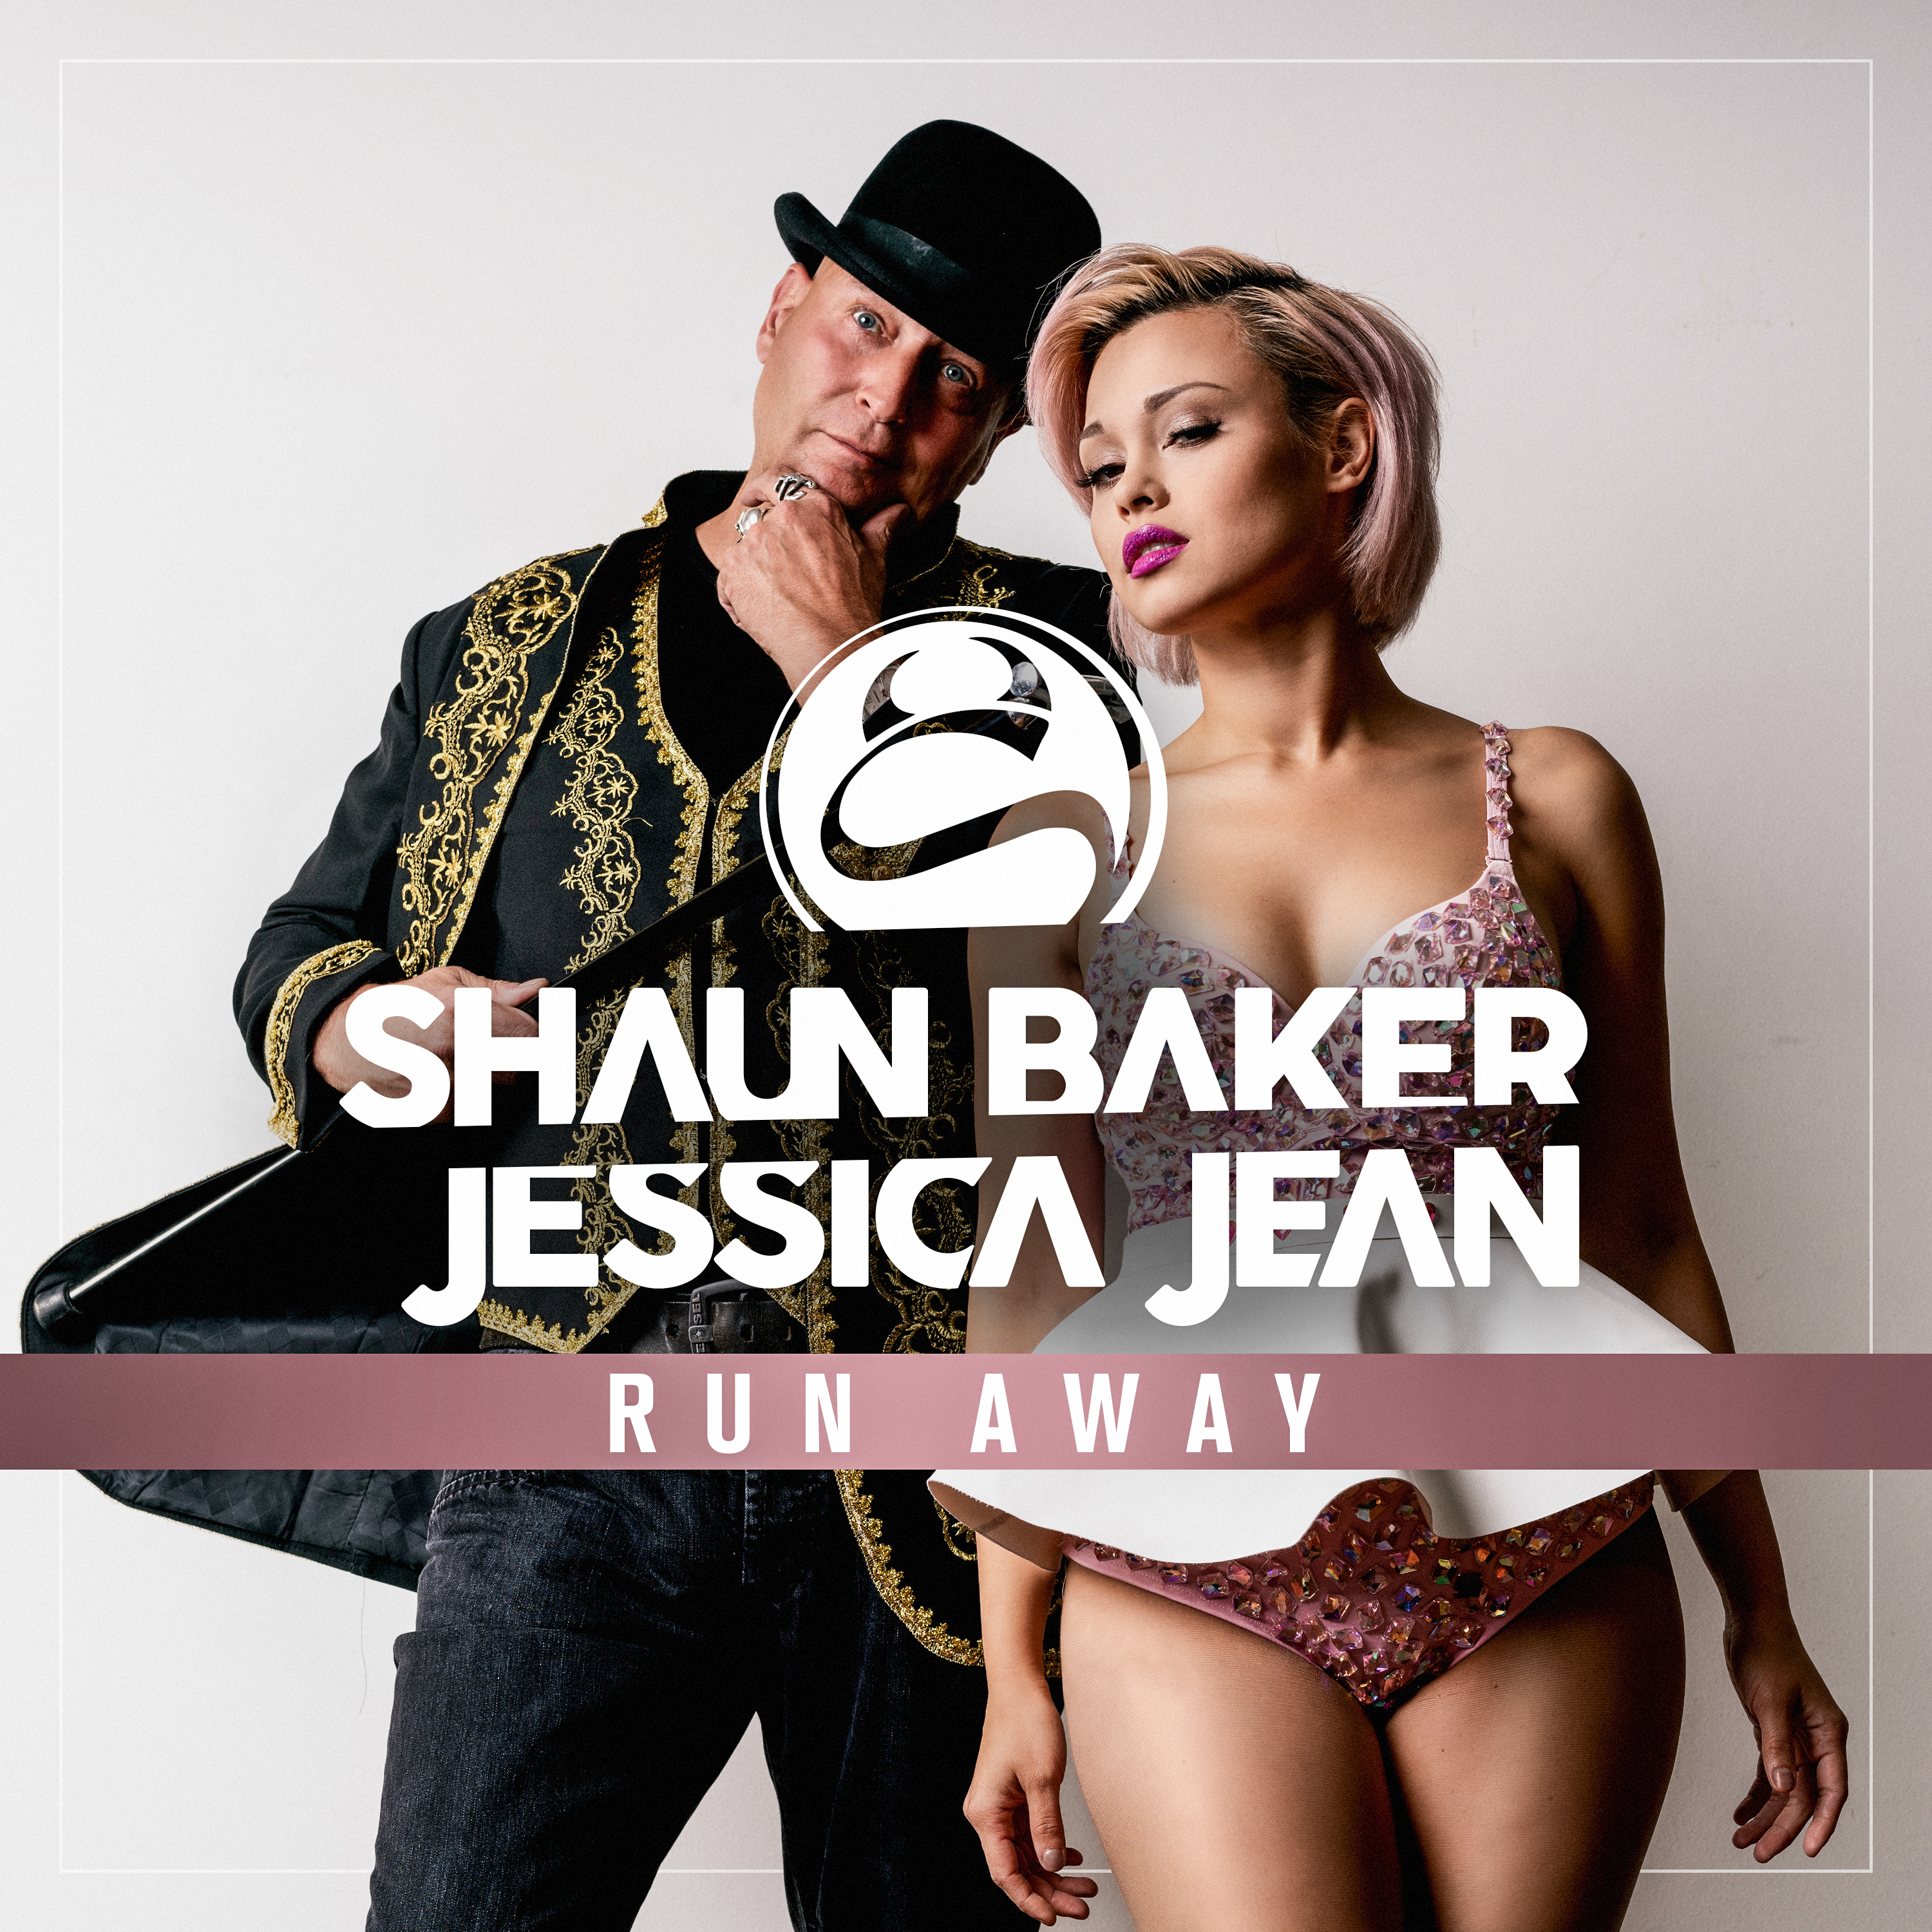 Shaun Baker powraca z nowym singlem Run Away!